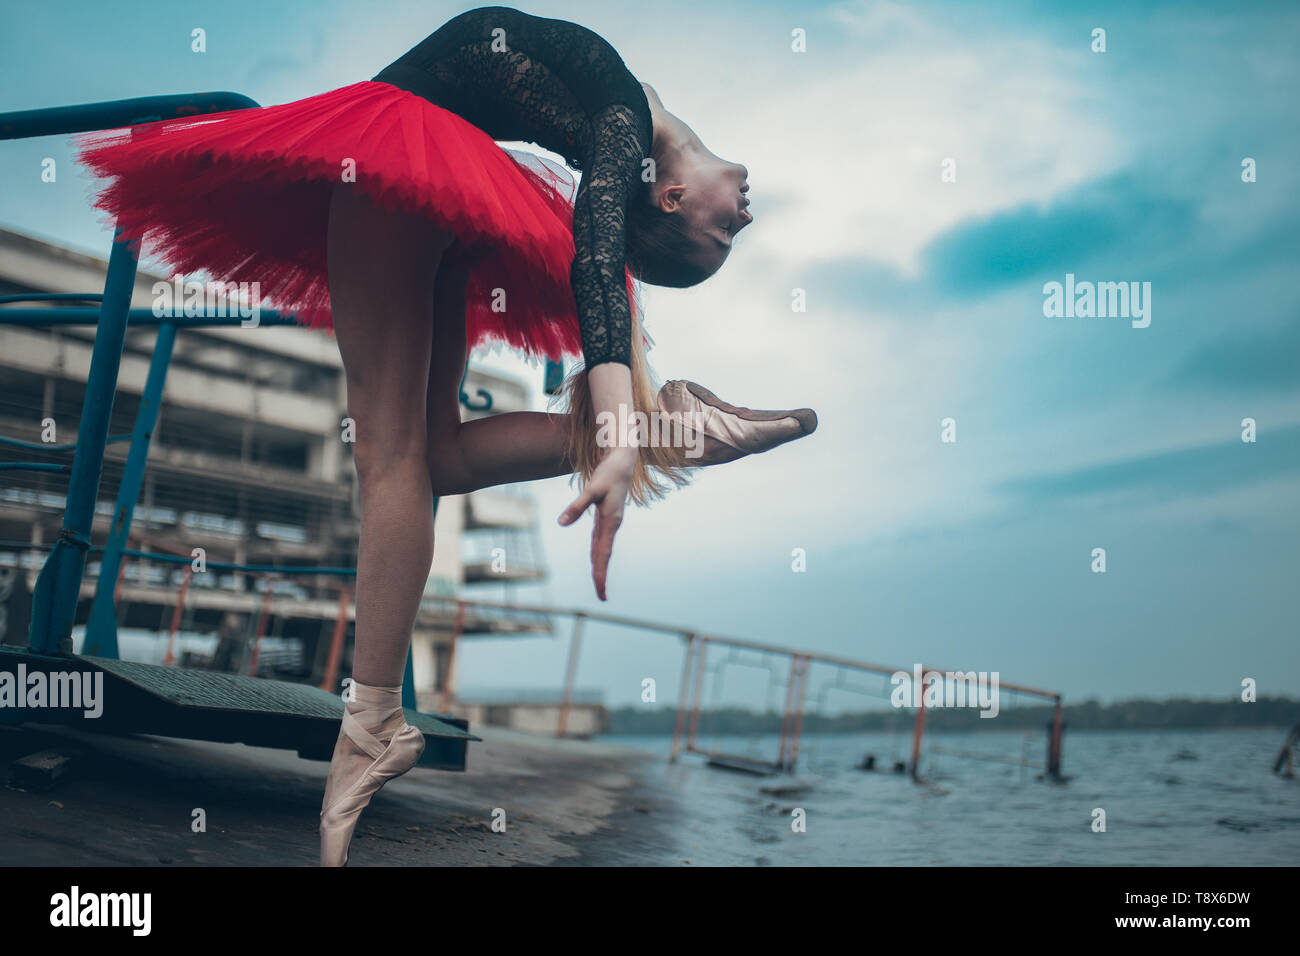 Ballerine danse sur la côte du fleuve dans un tutu rouge et noir contre fond de bâtiment. Banque D'Images